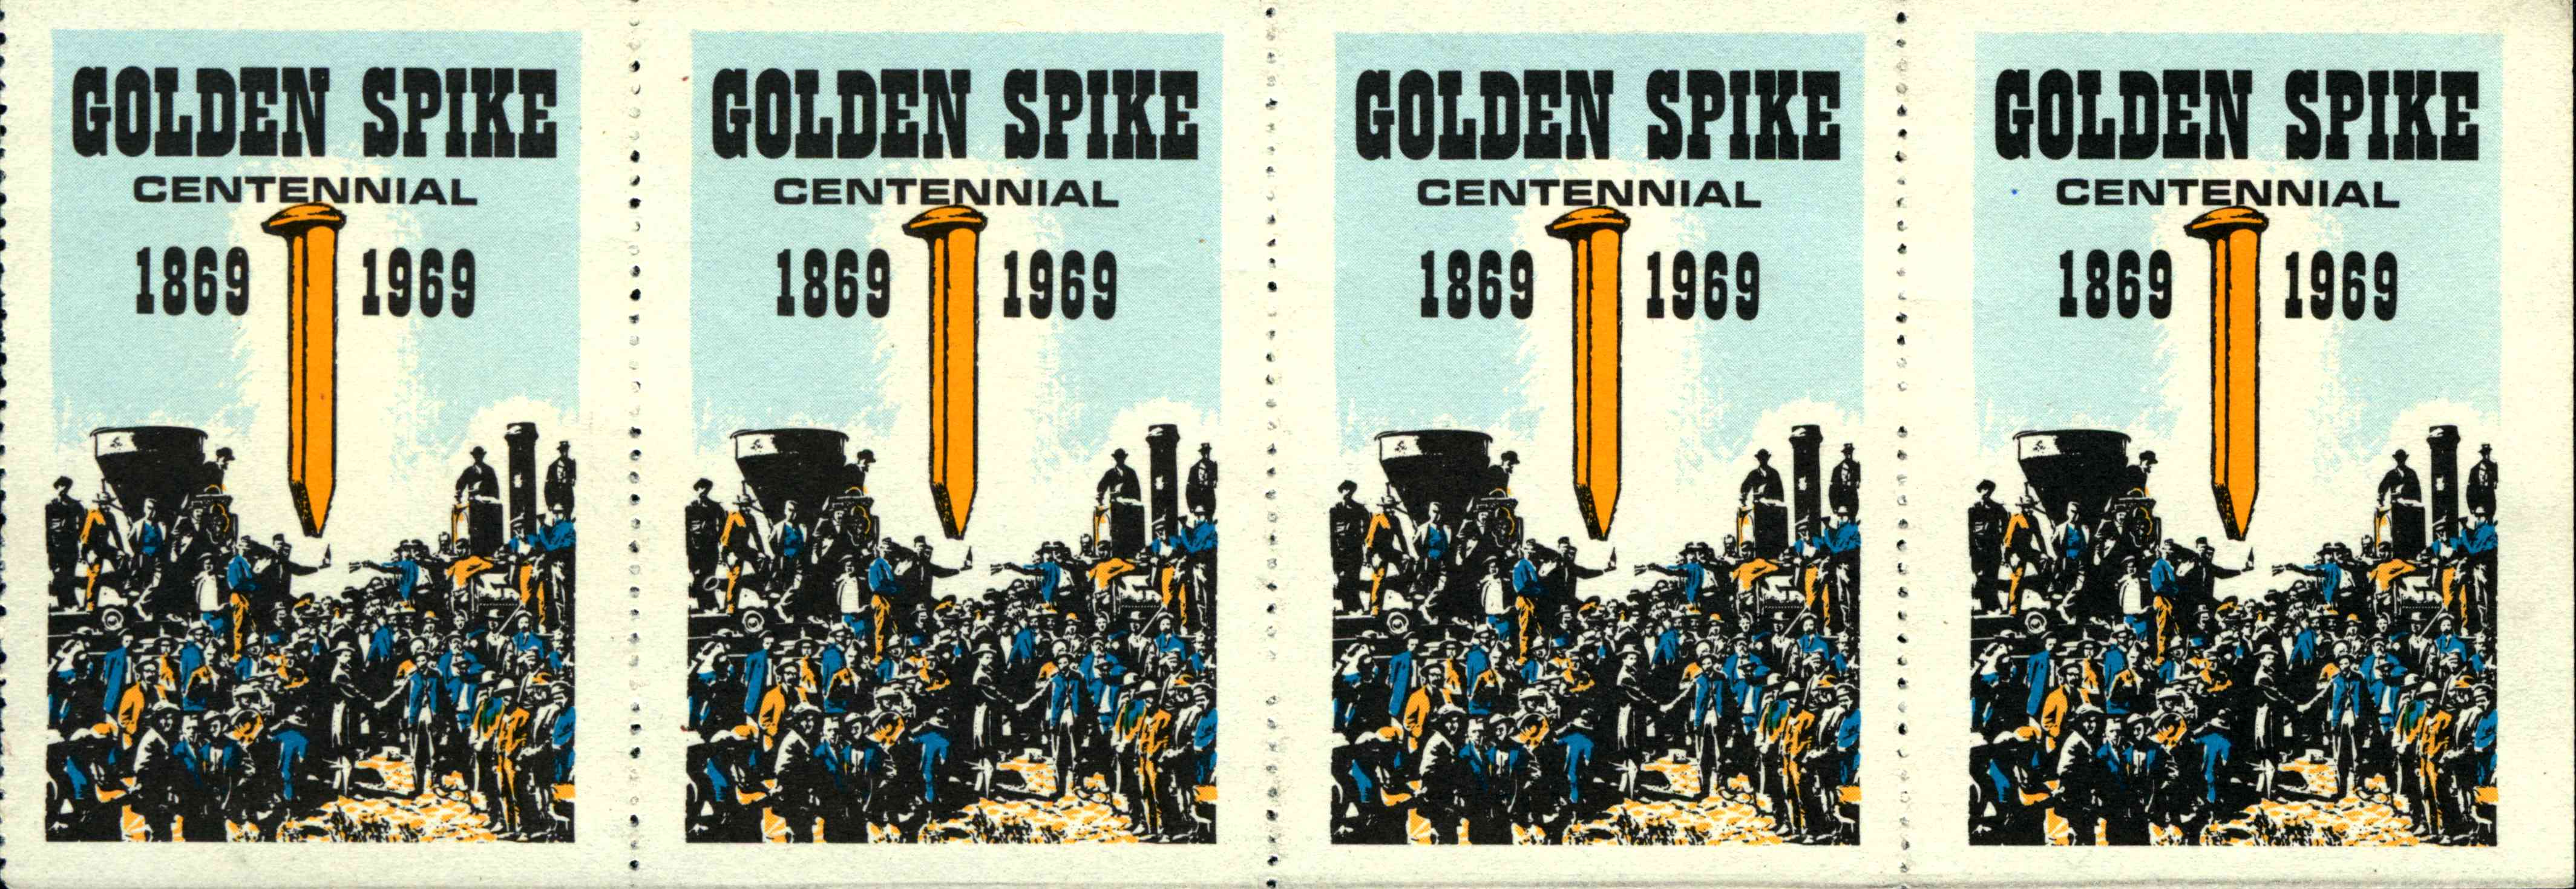 Golden Spike Centennial 1869-1969